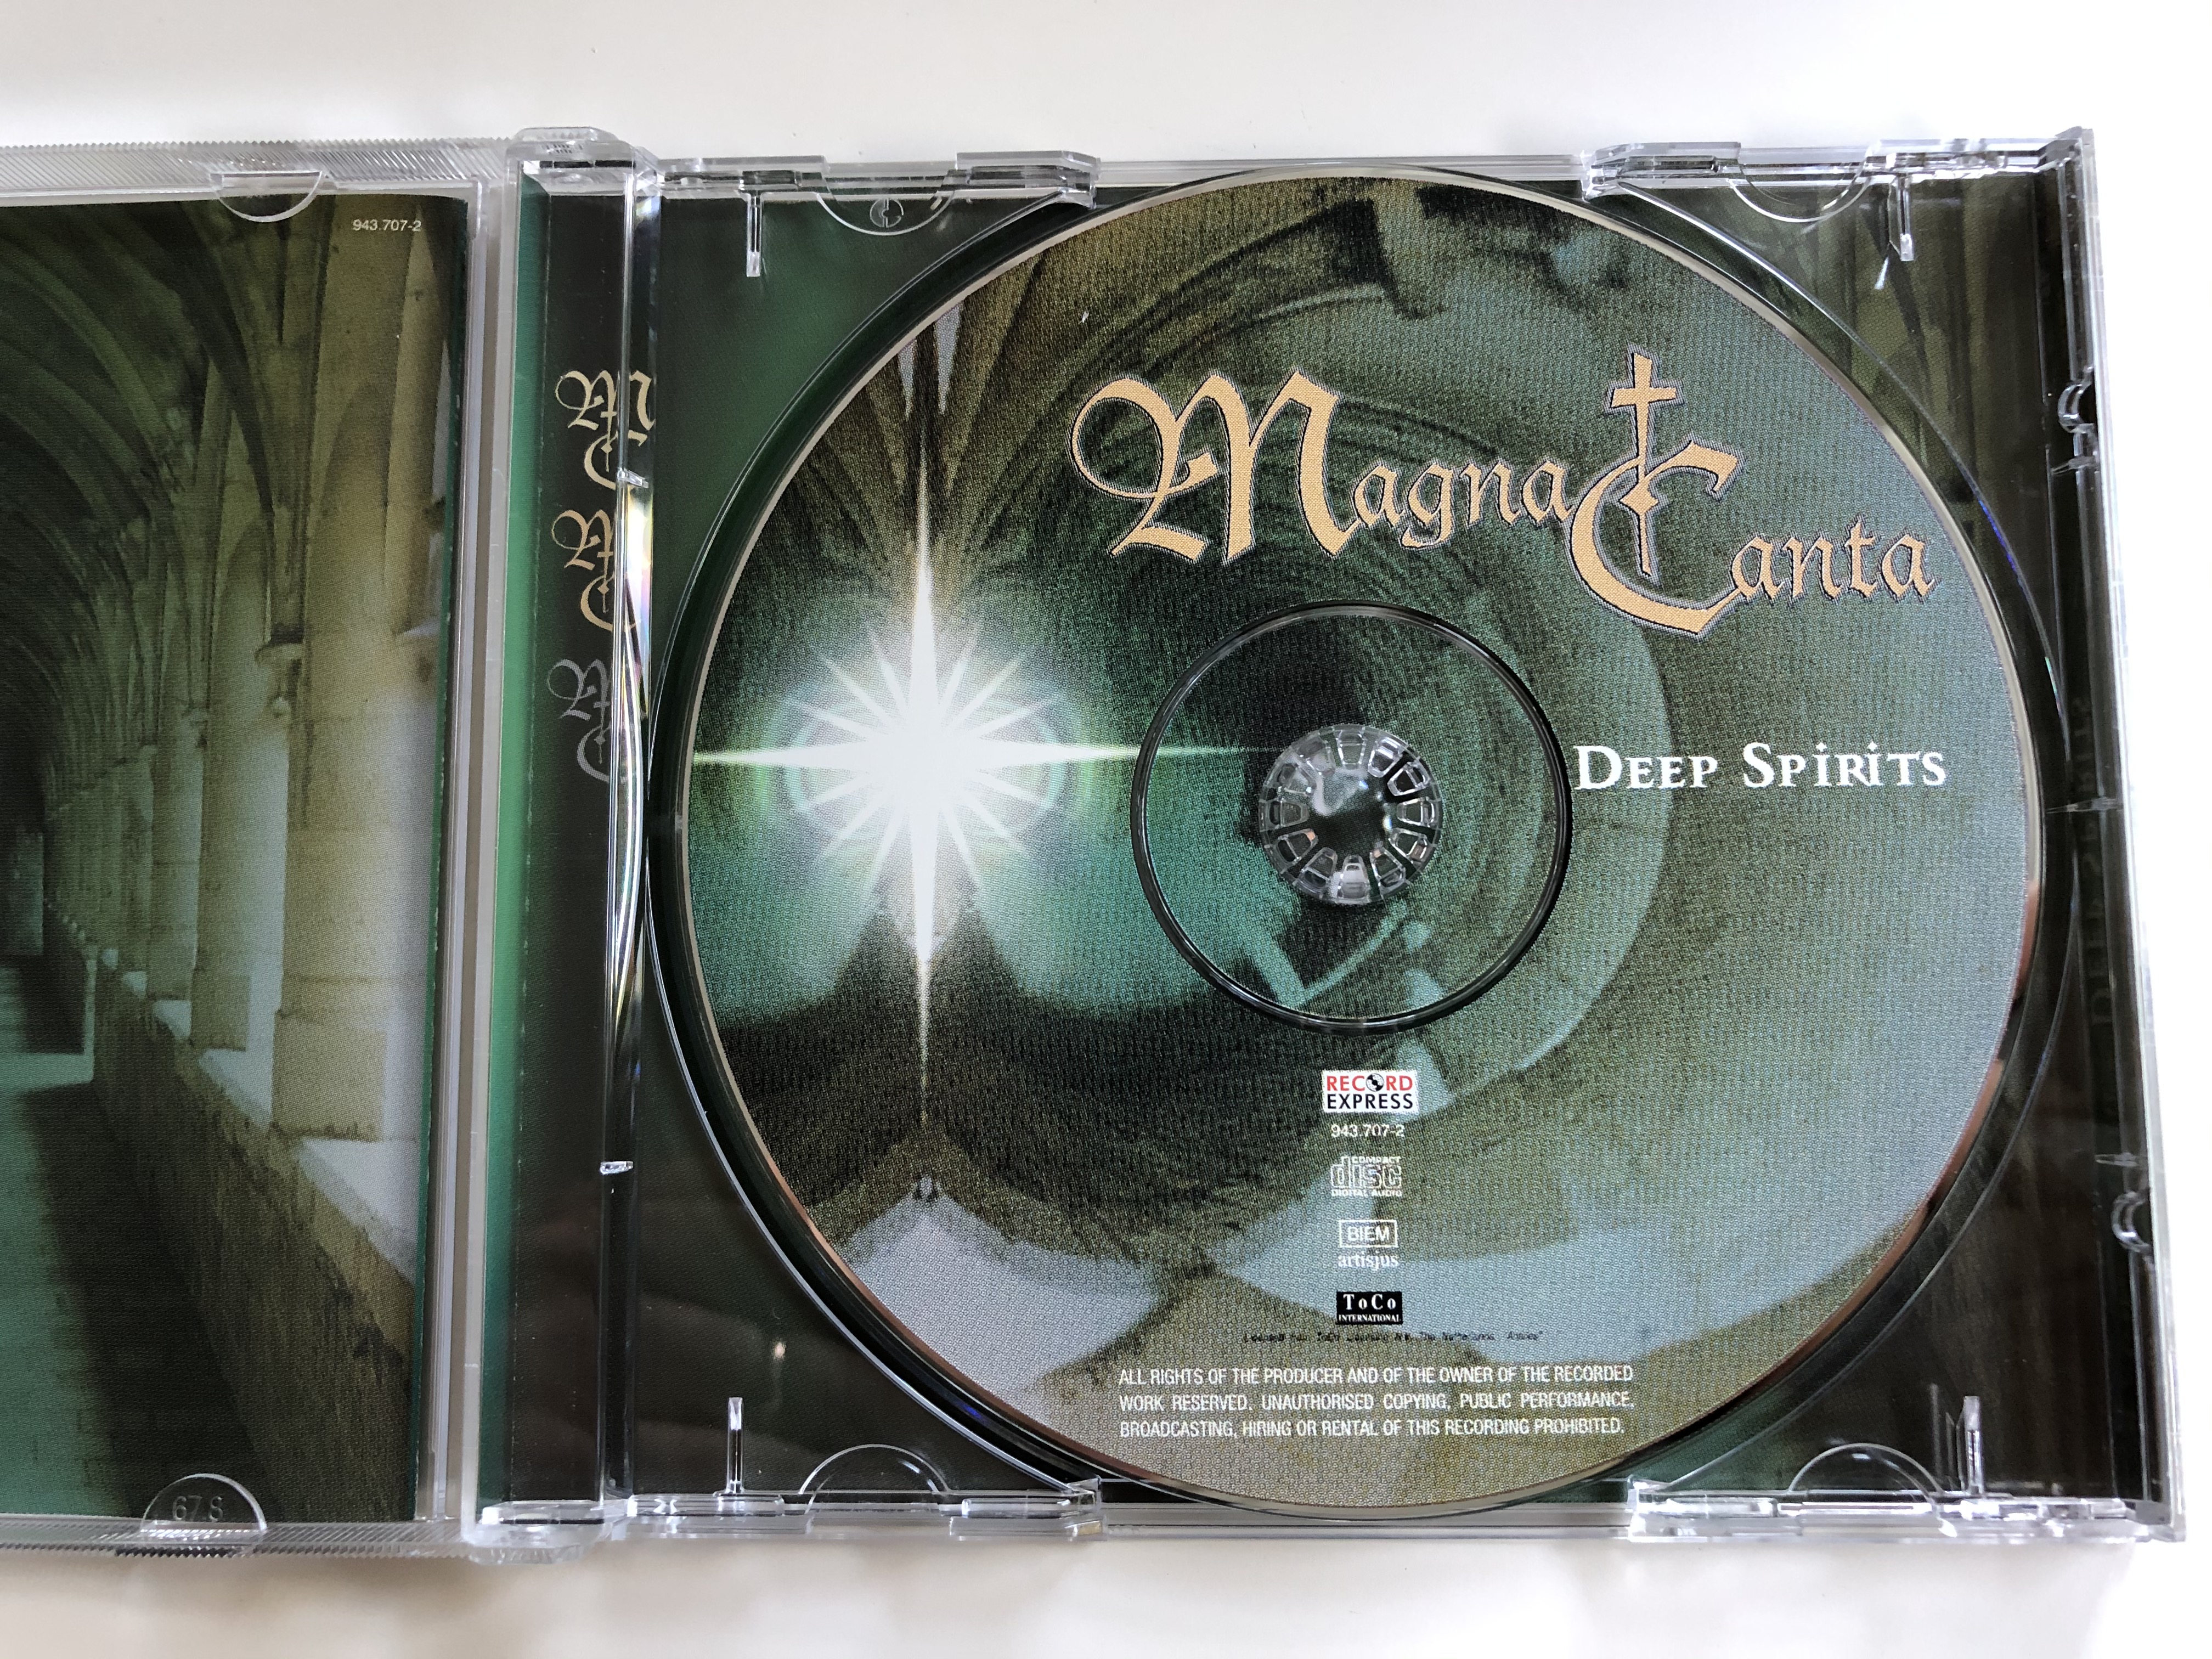 magna-canta-deep-spirits-record-express-audio-cd-2000-943-4-.jpg